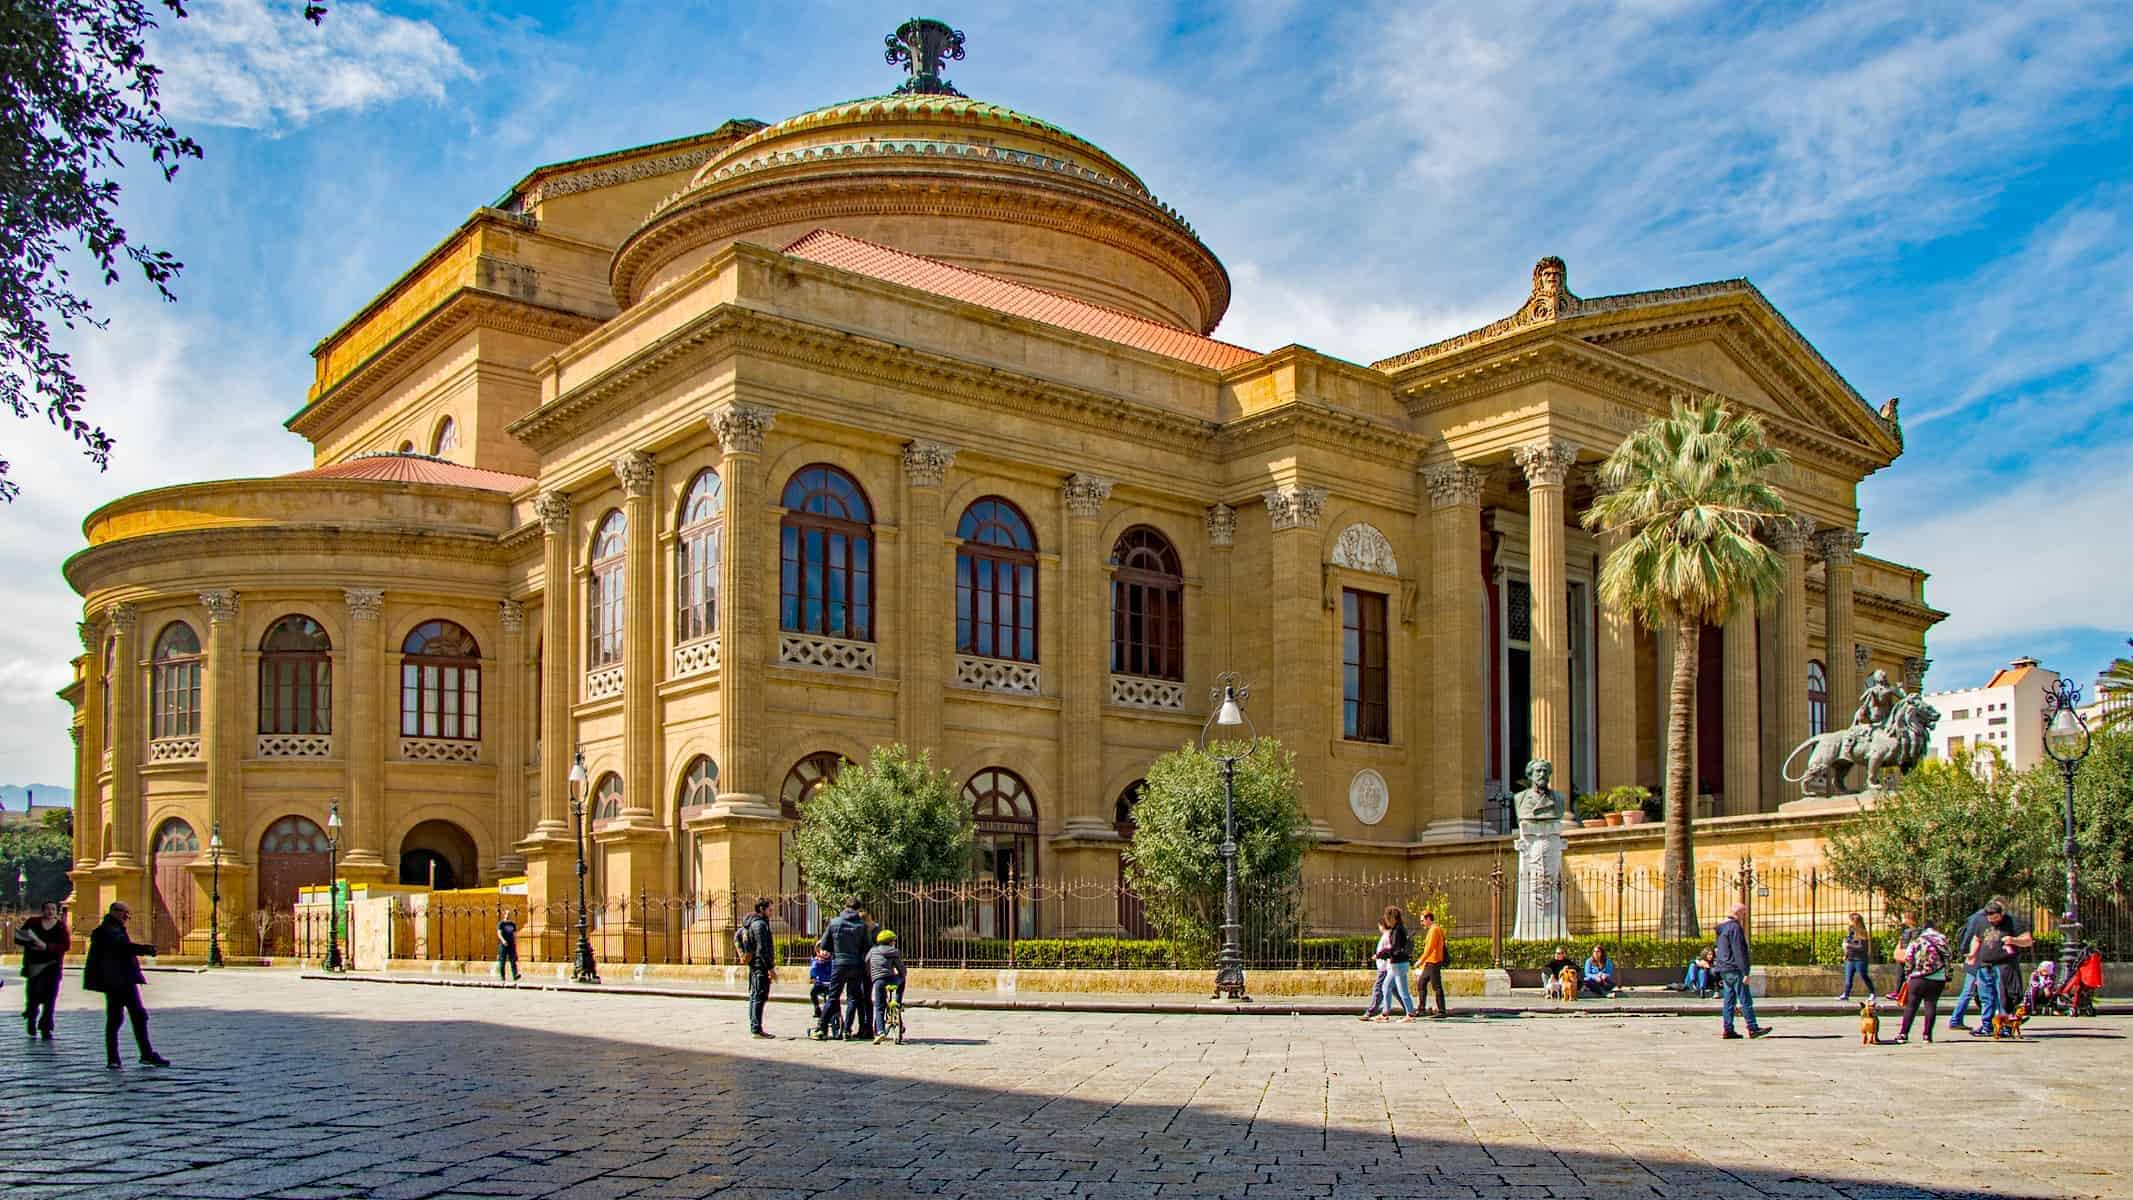 Teatro Massimo in Palermo Sicily